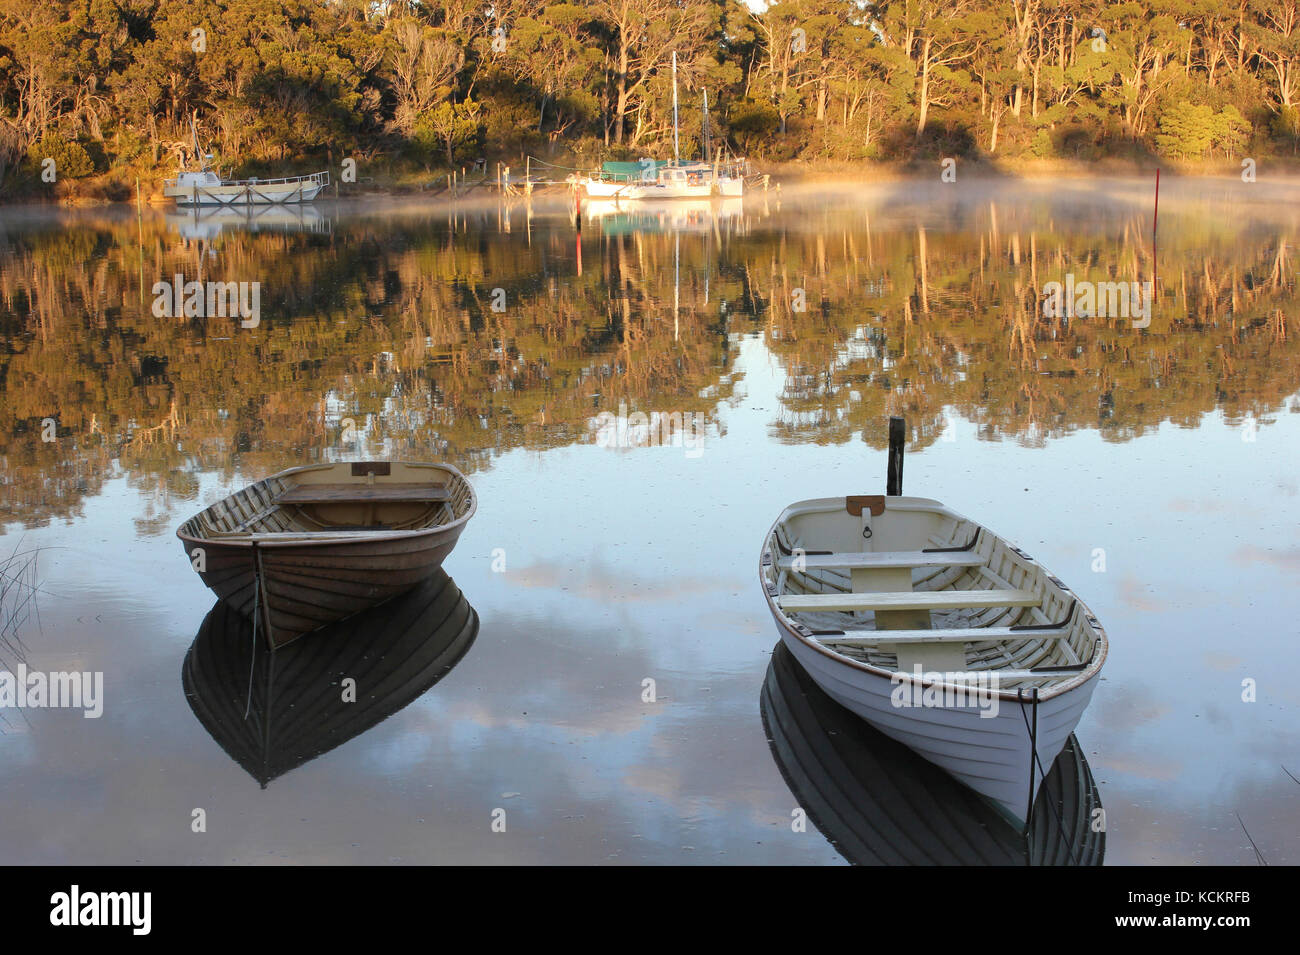 Panatana Rivulet (alias Muddy Creek) à marée haute, un site d'amarrage populaire pour petits bateaux. Port Sorell, nord-ouest de la Tasmanie, Australie Banque D'Images